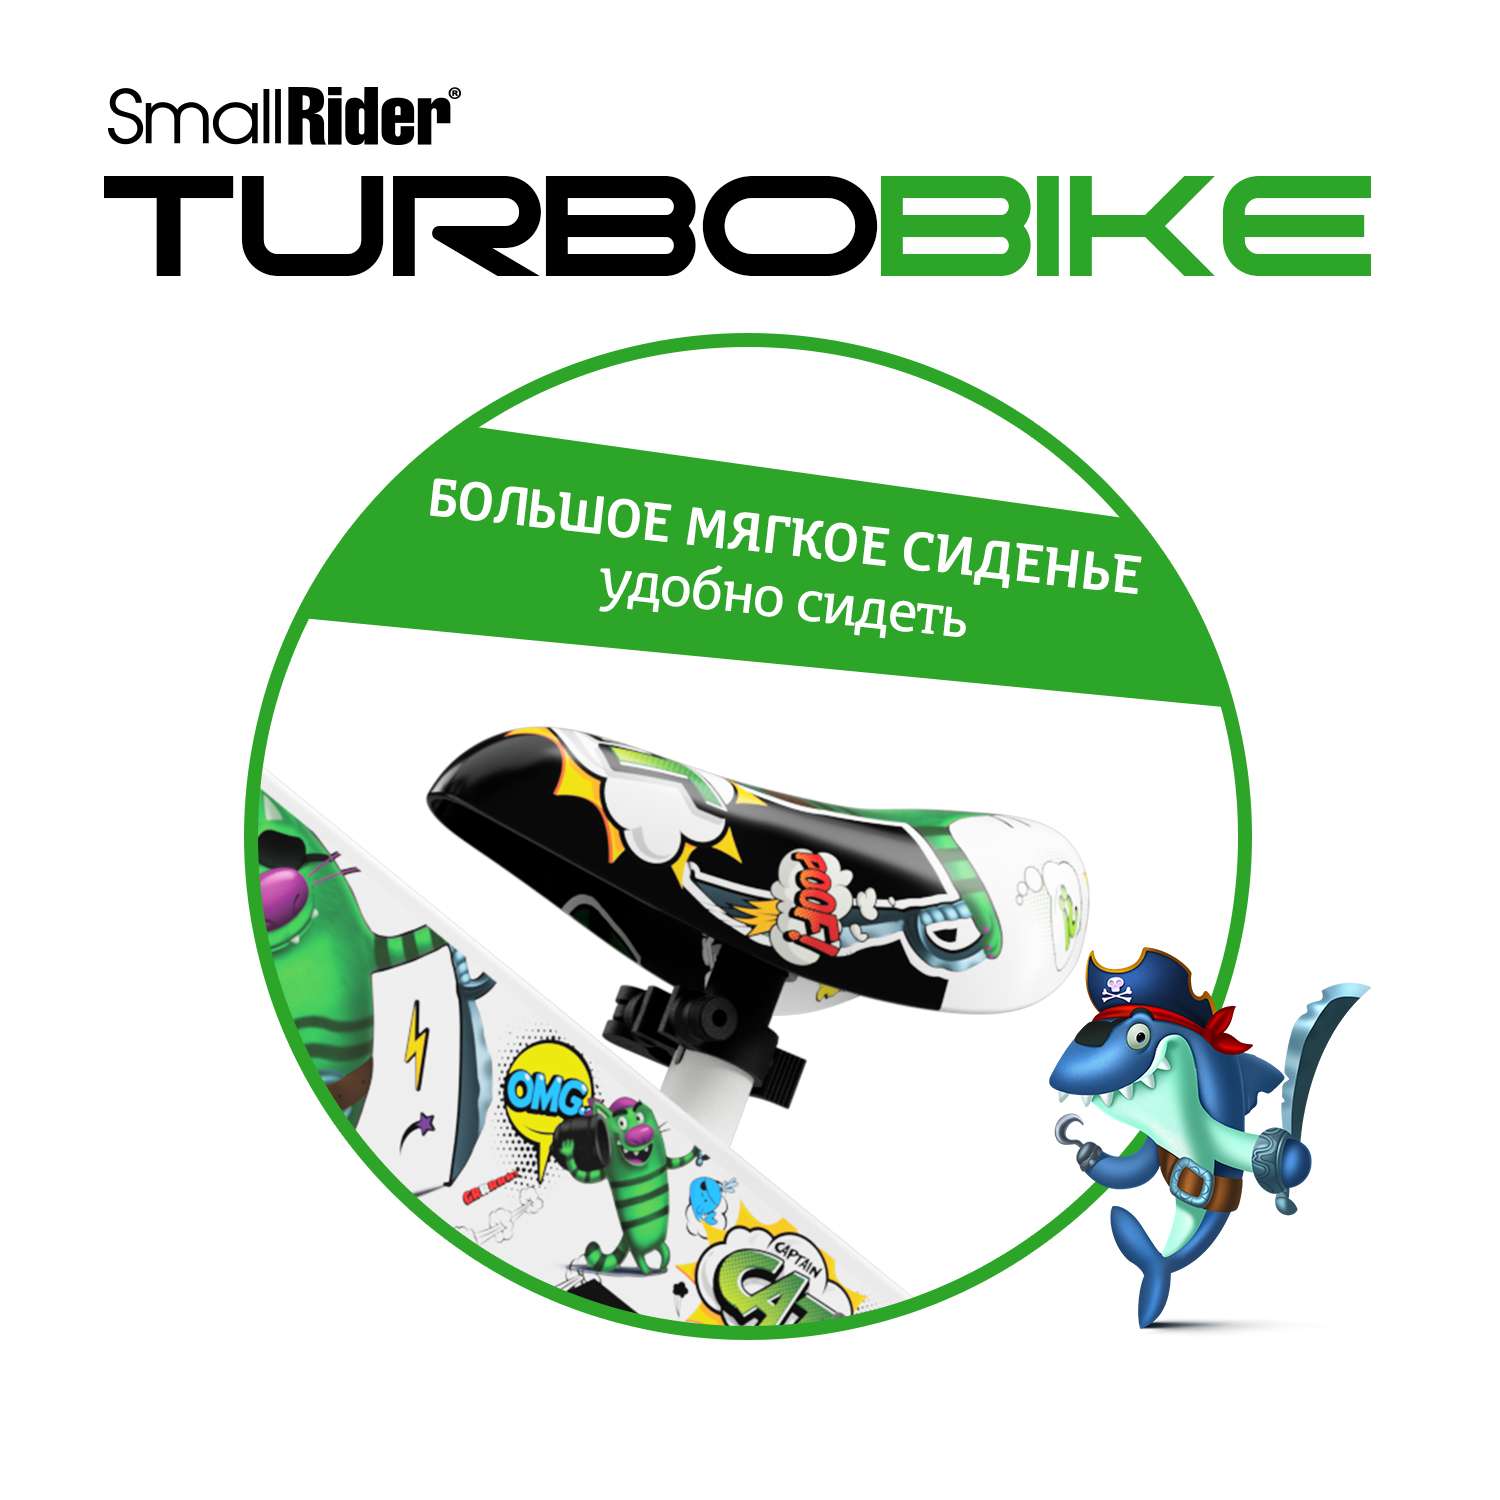 Беговел Small Rider для малышей Turbo Bike зеленый - фото 6